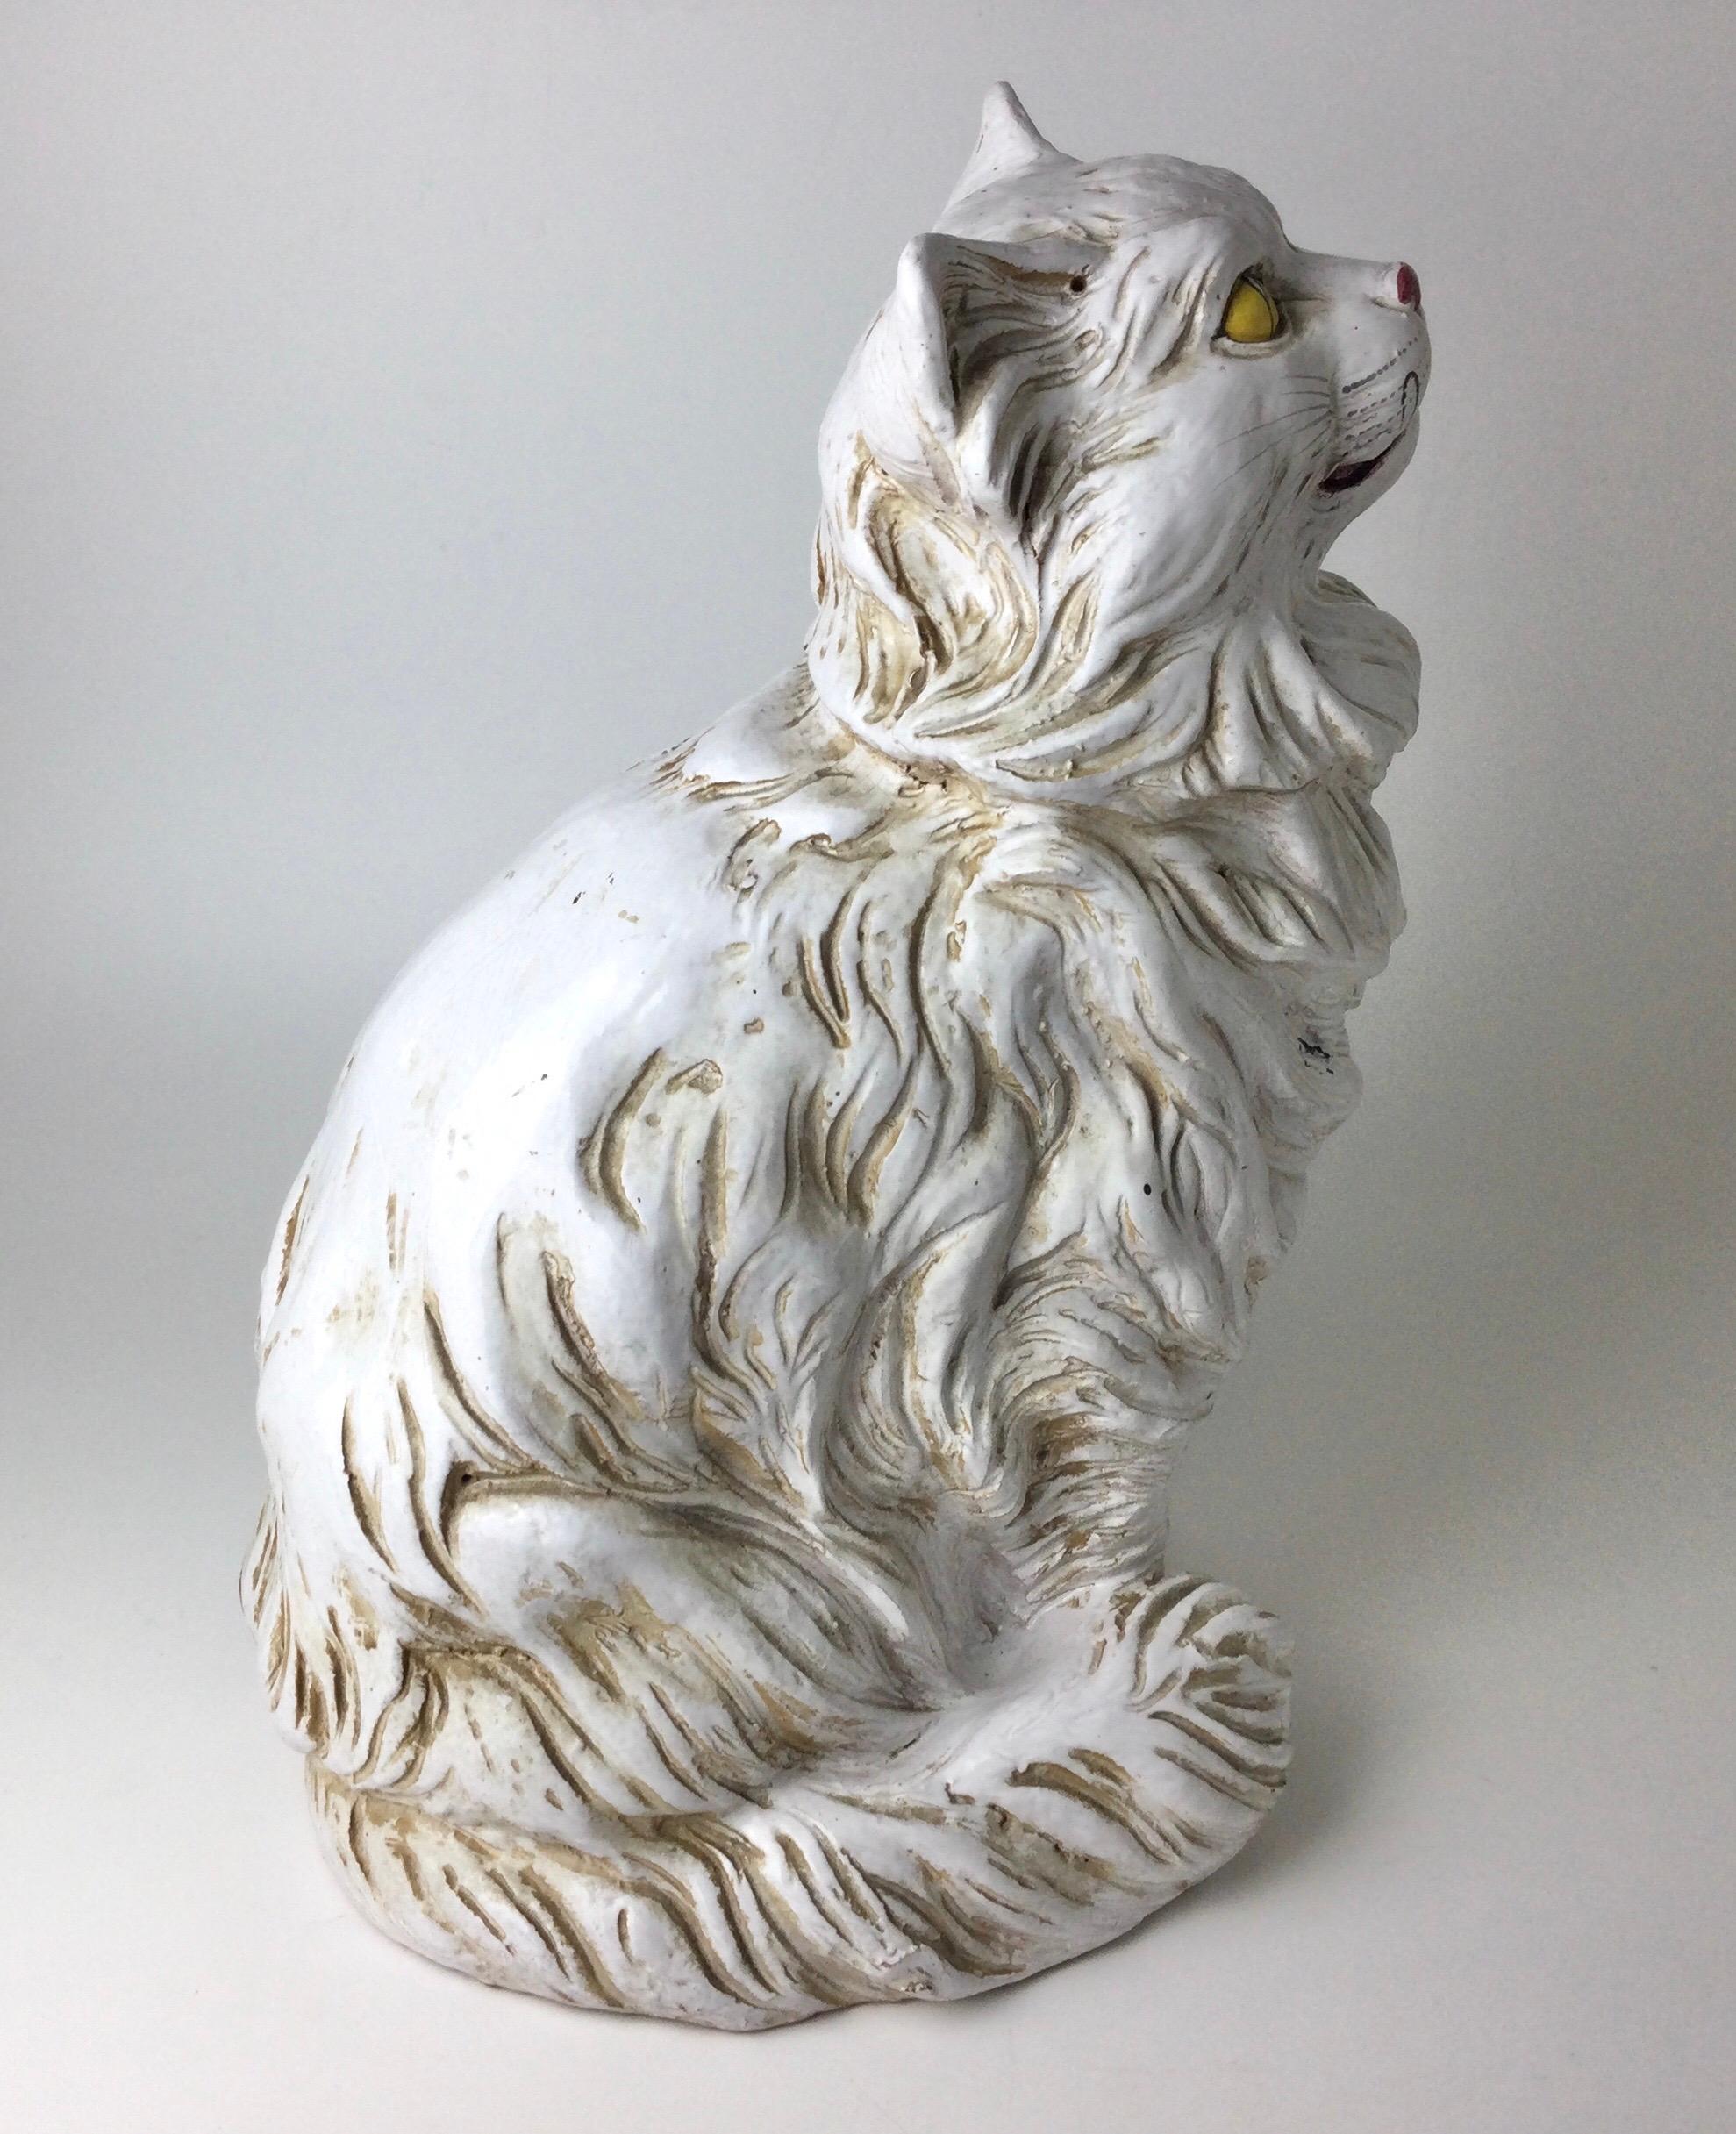 Scultura vintage in ceramica italiana con figura di gatto bianco di grandi dimensioni, alta 19 pollici. Marcato sul fondo. Usura dovuta all'età.